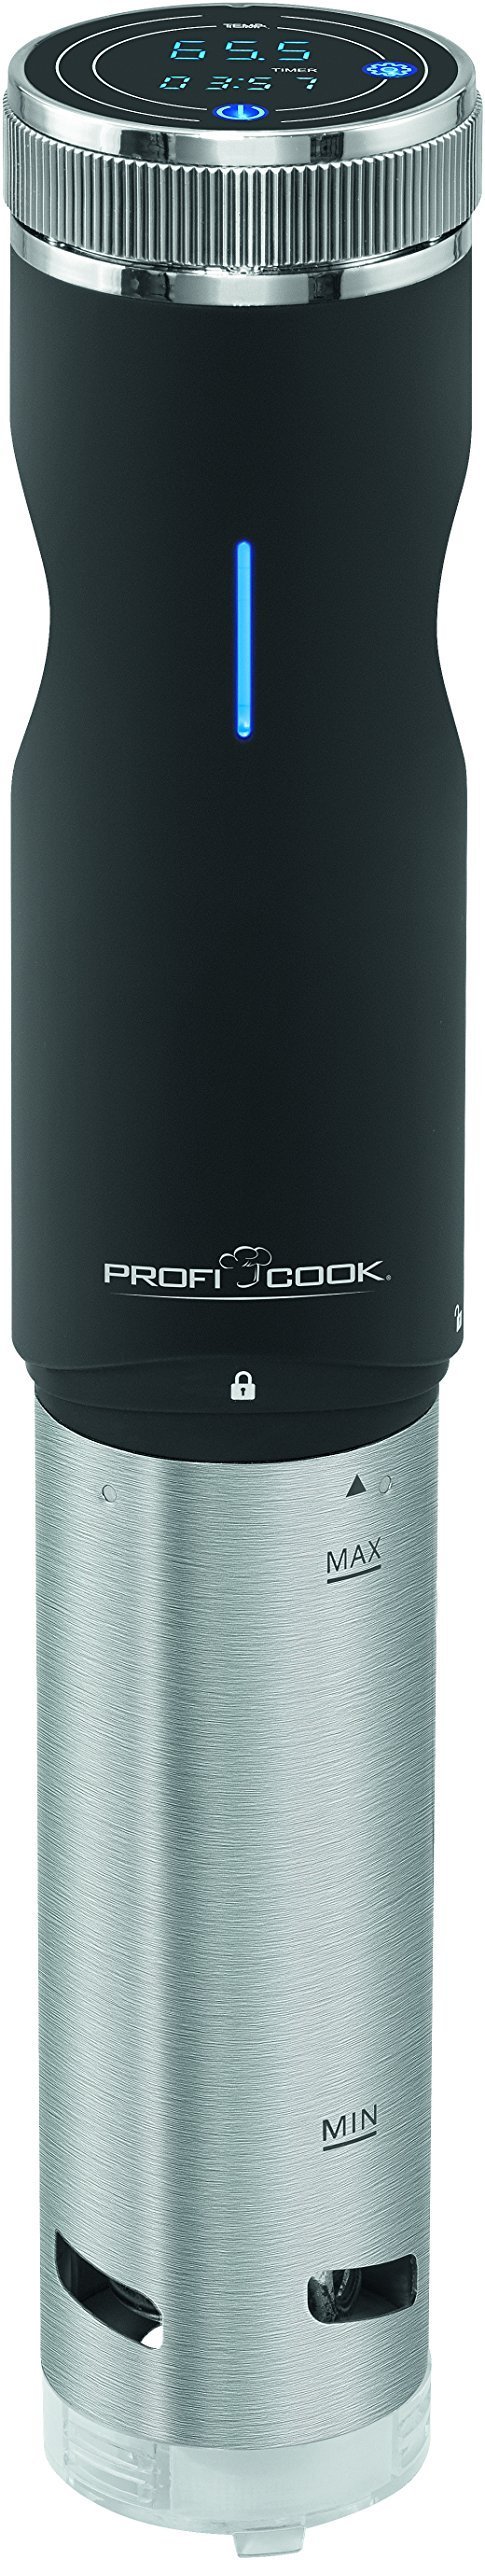 primeԱProfi Cook PC-SV 1126  722.74 +86.01